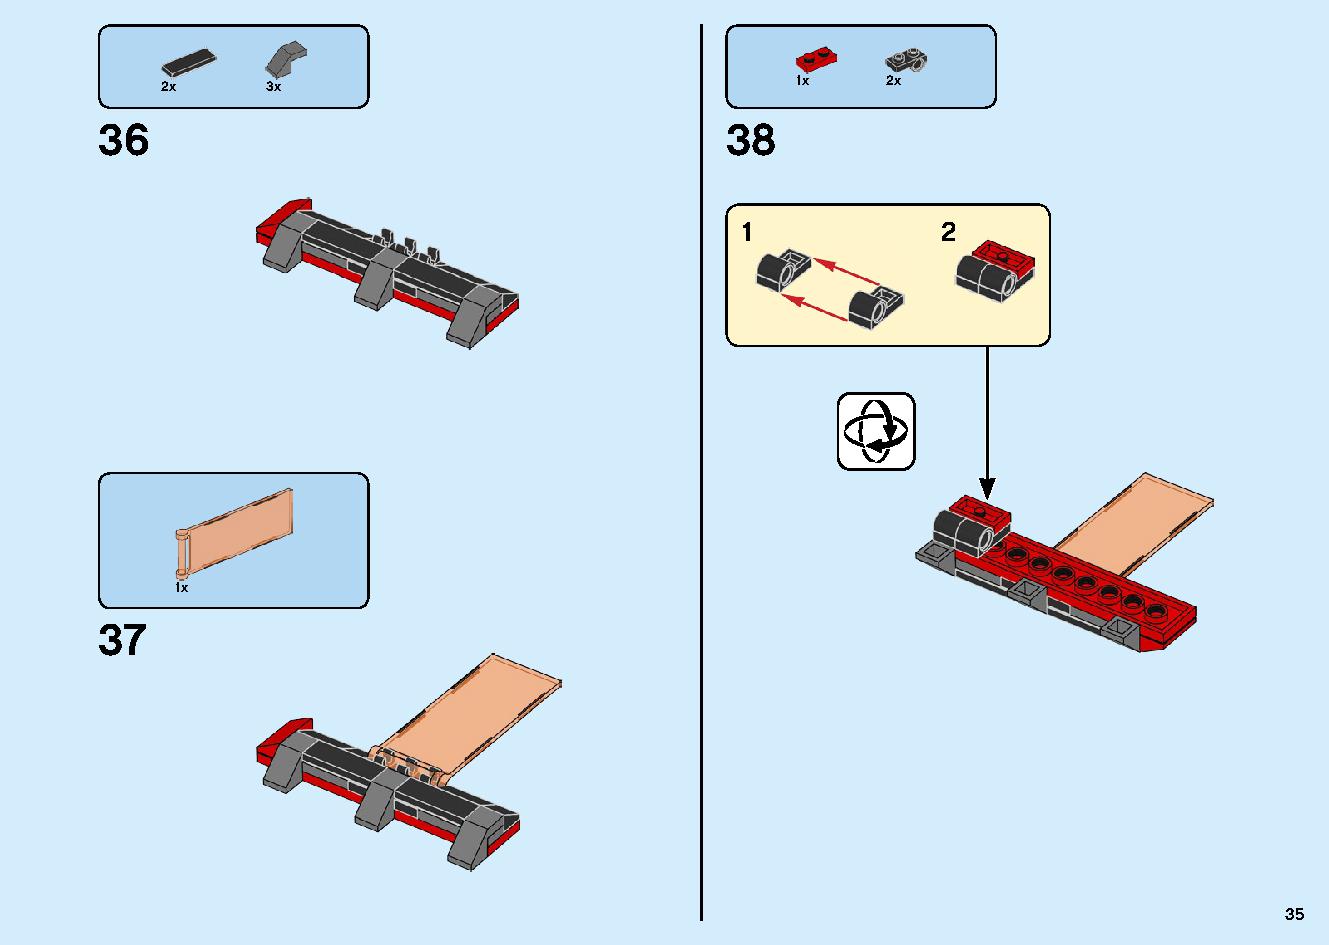 マッドキング神殿 71712 レゴの商品情報 レゴの説明書・組立方法 35 page